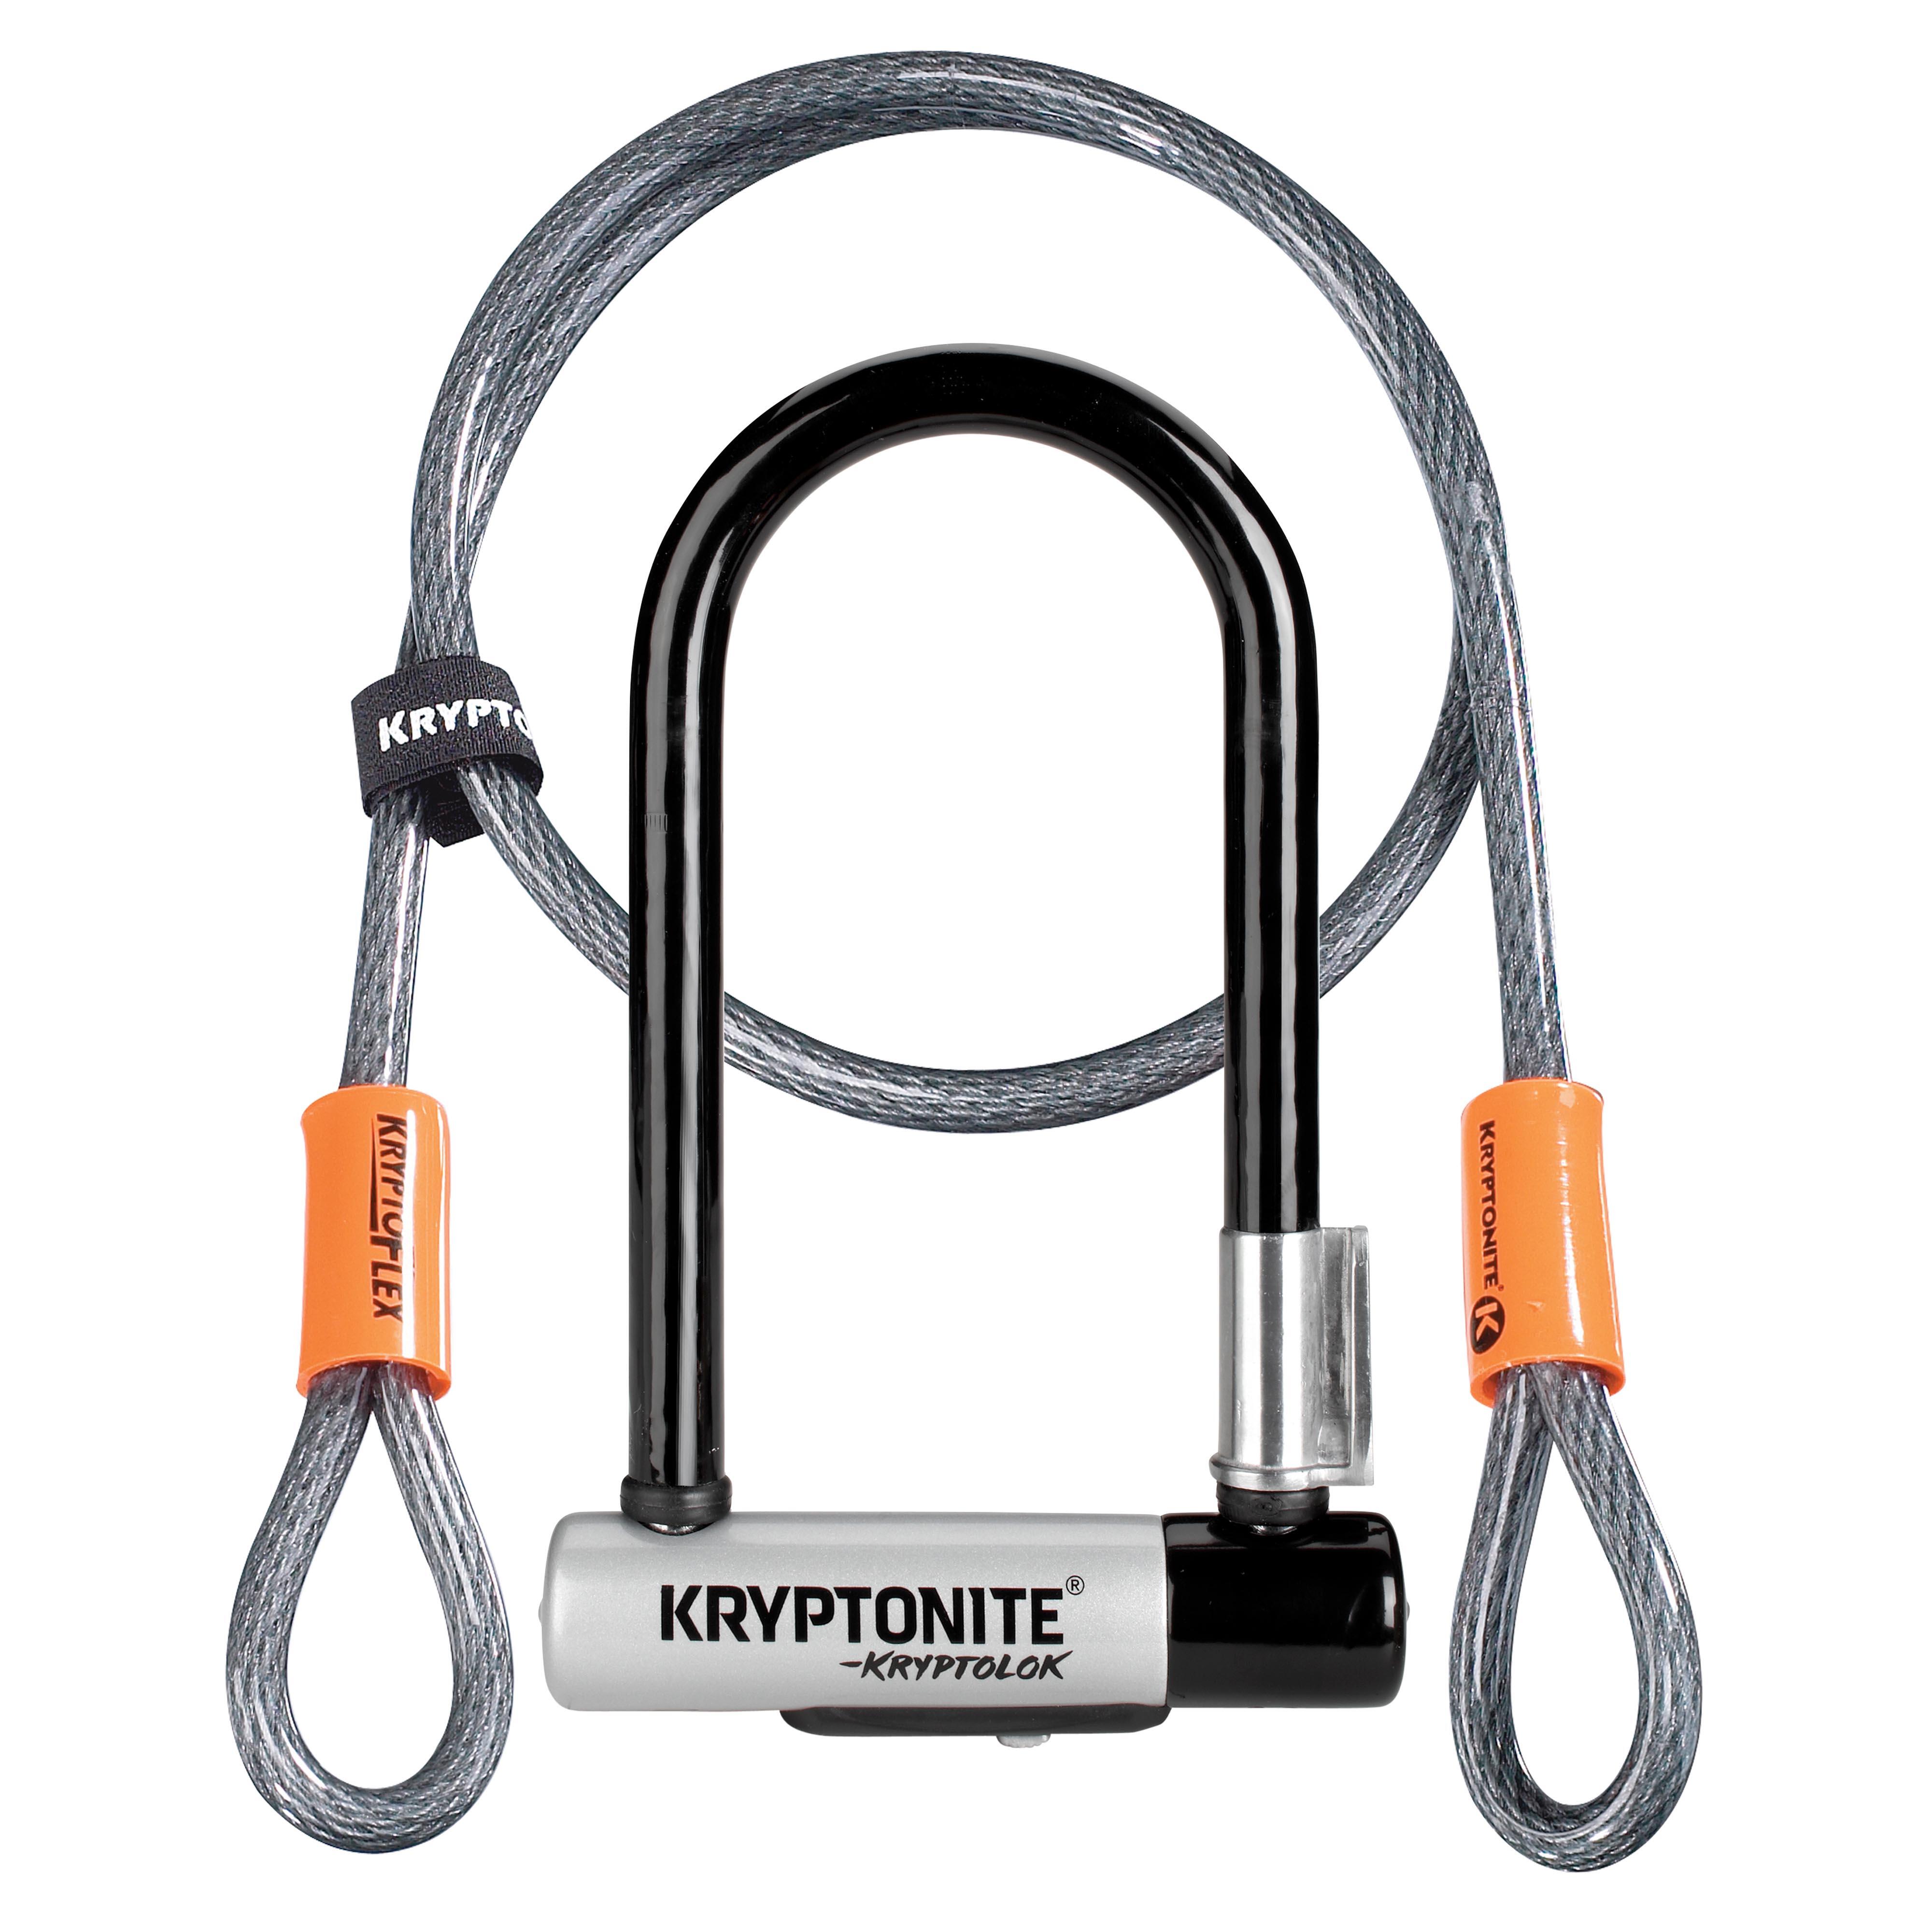 Kryptonite Kryptolok D Lock With 4 Foot Krytoflex Cable - Sold Secure Gold